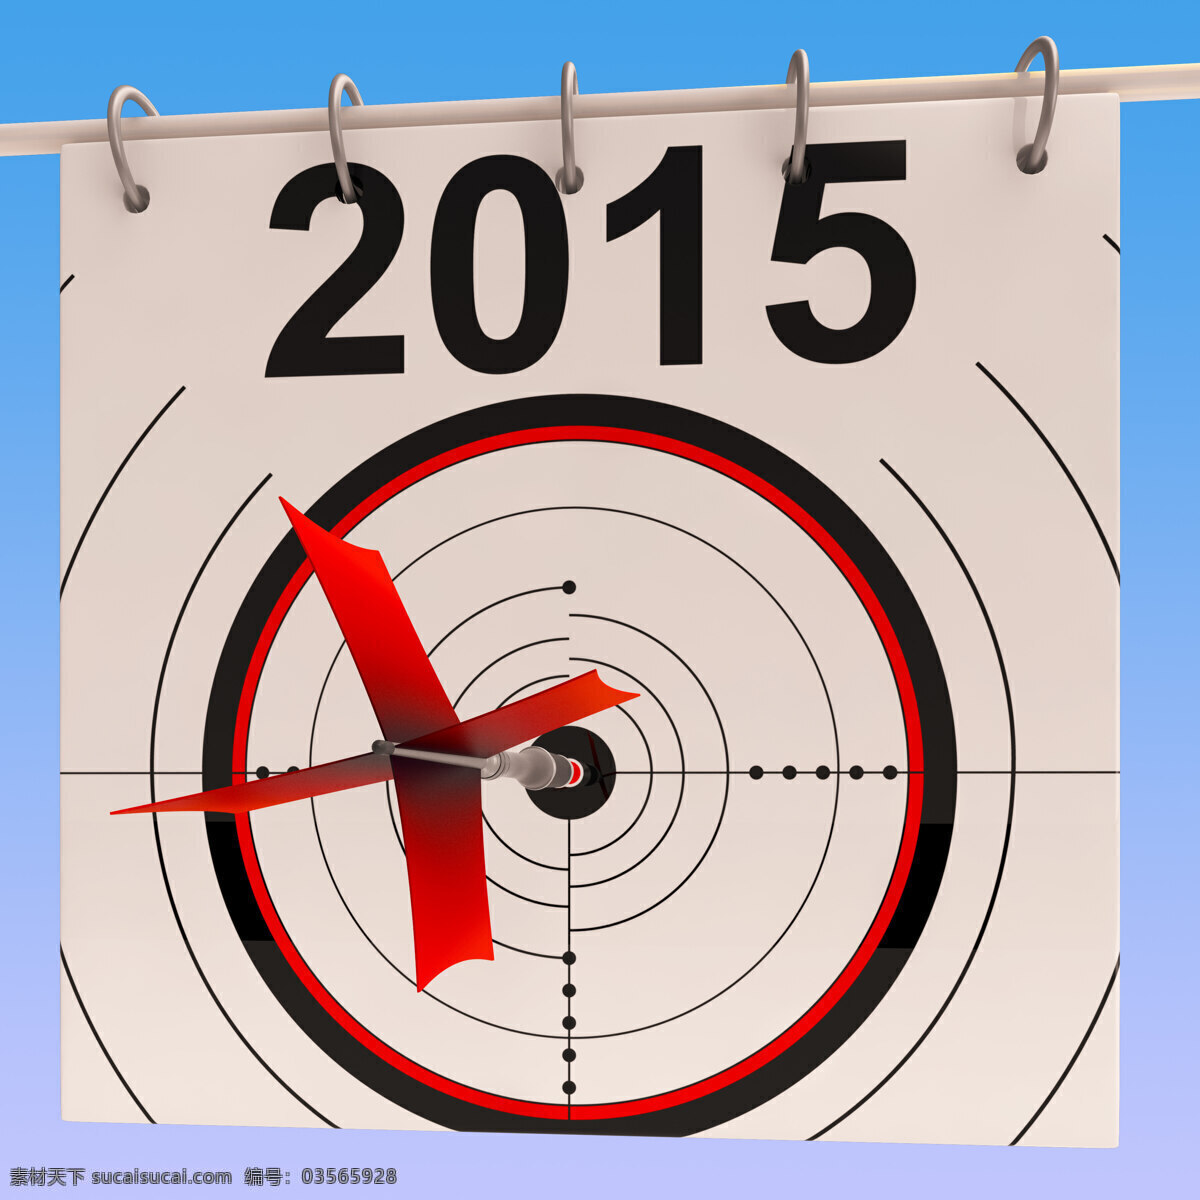 2015 日历 意味着 规划 年度 日程安排